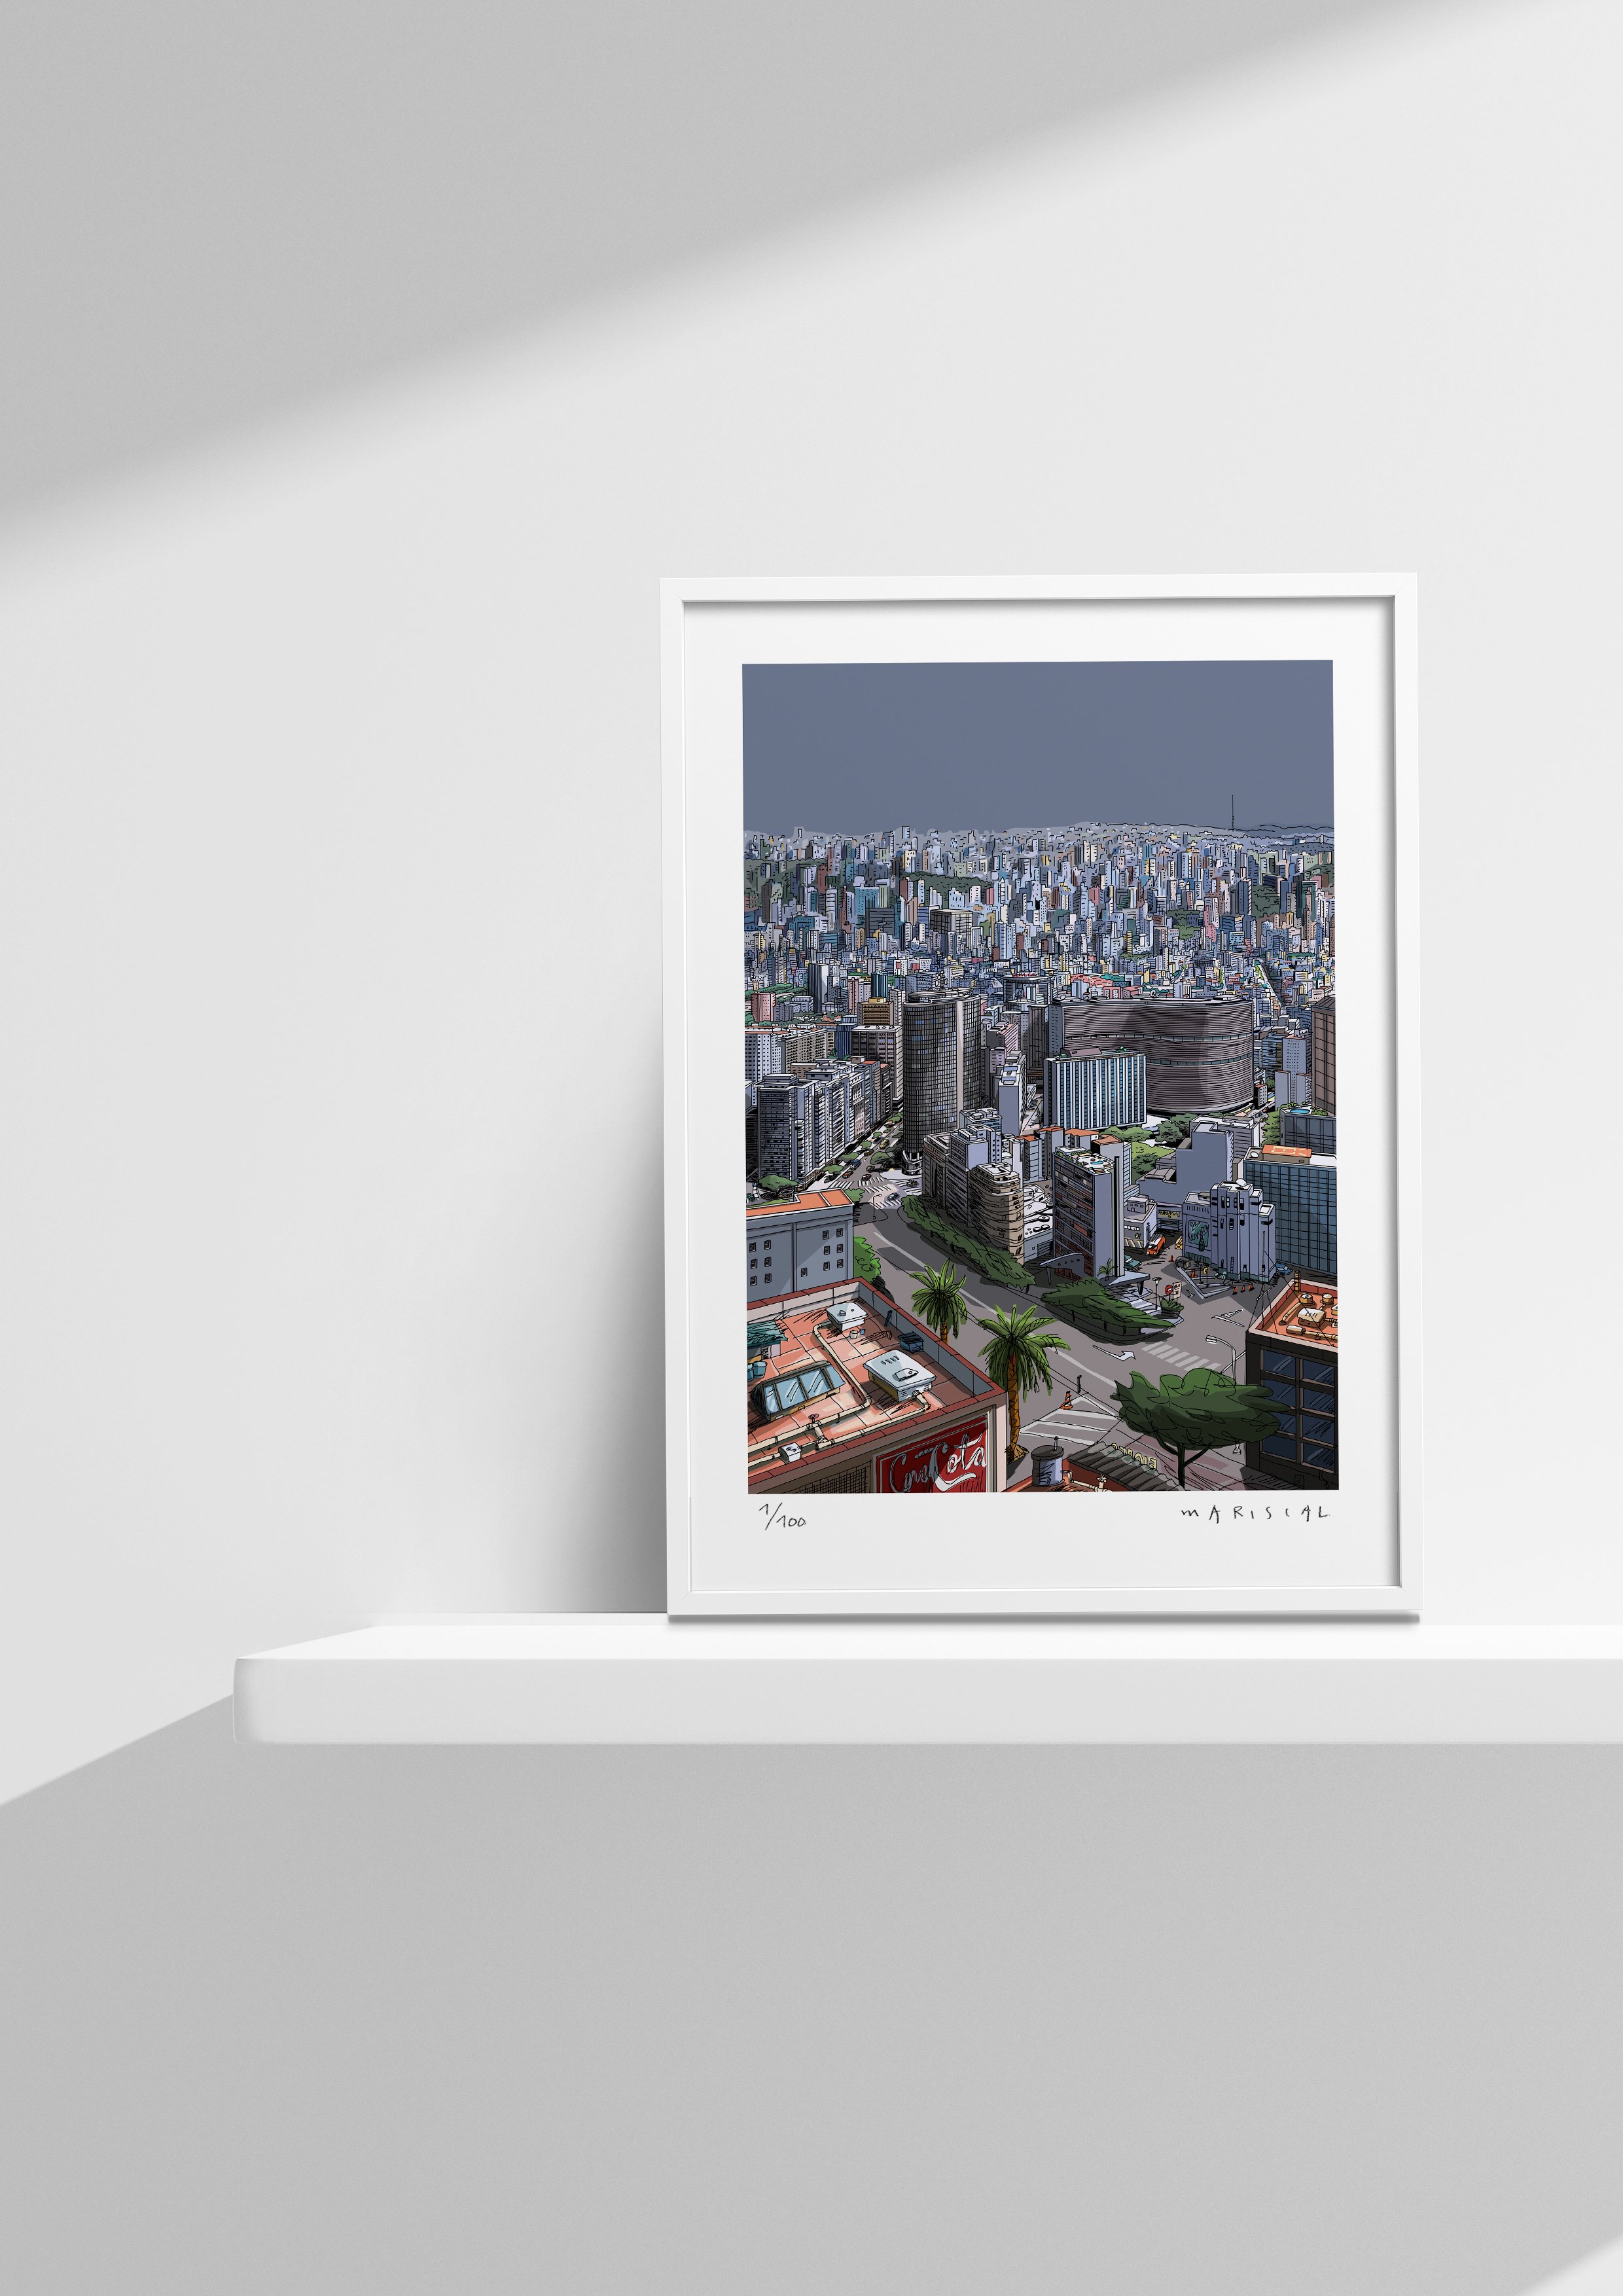 Ilustracion de la ciudad de Sao Paulo, impreso en papel arte y firmado por Mariscal